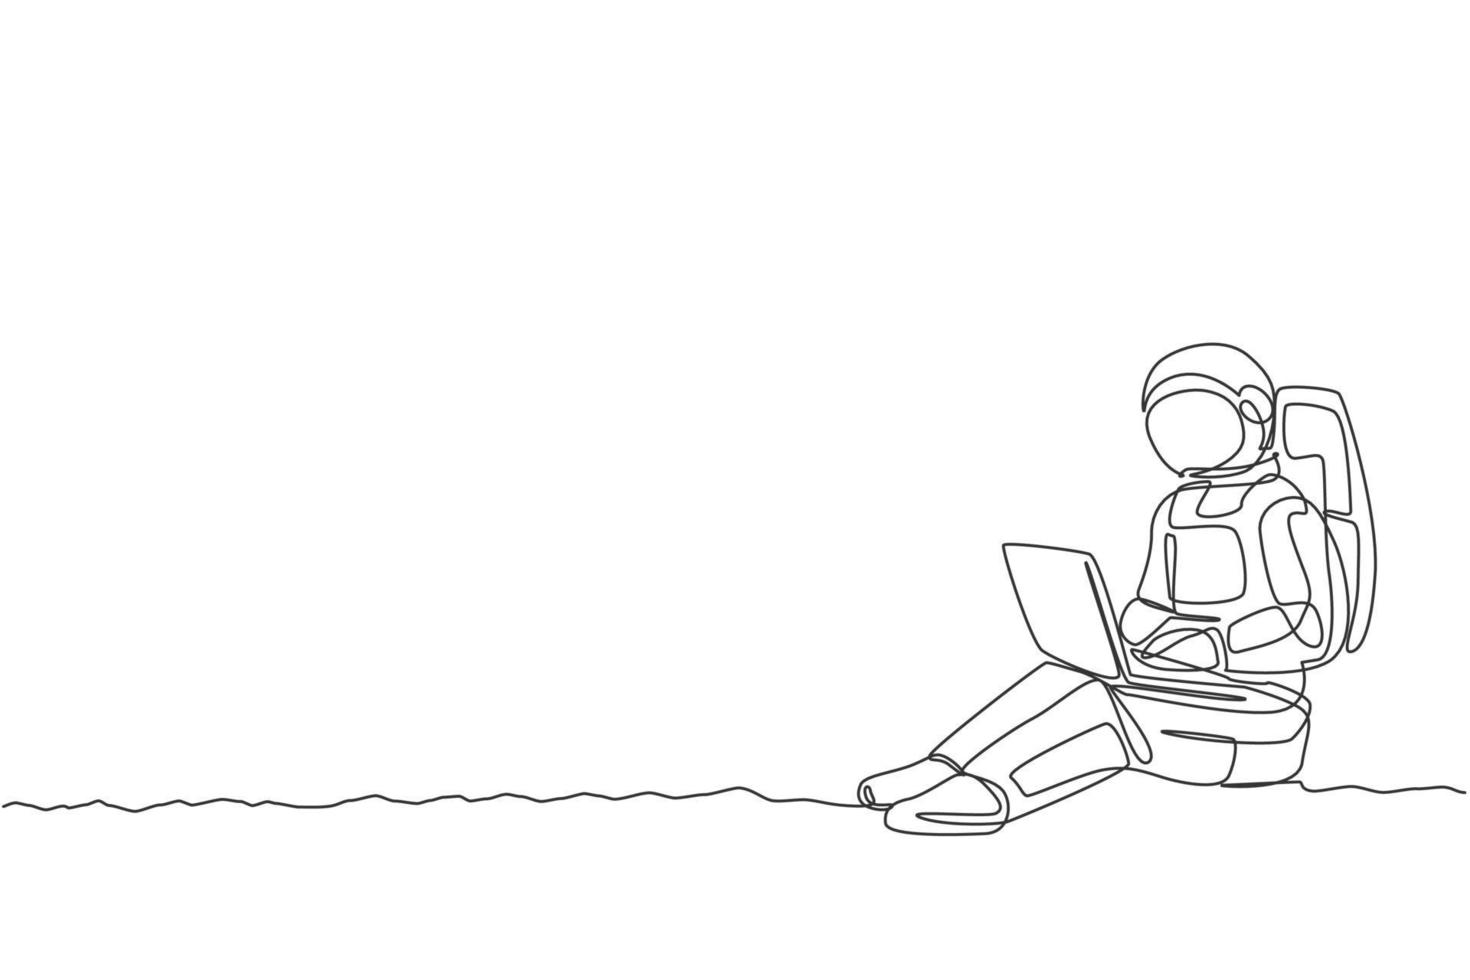 dibujo de una sola línea continua de un astronauta sentado en la superficie de la luna mientras escribe en una computadora portátil. oficina de negocios con concepto de espacio ultraterrestre de galaxia. Ilustración de vector de diseño de dibujo de una línea de moda